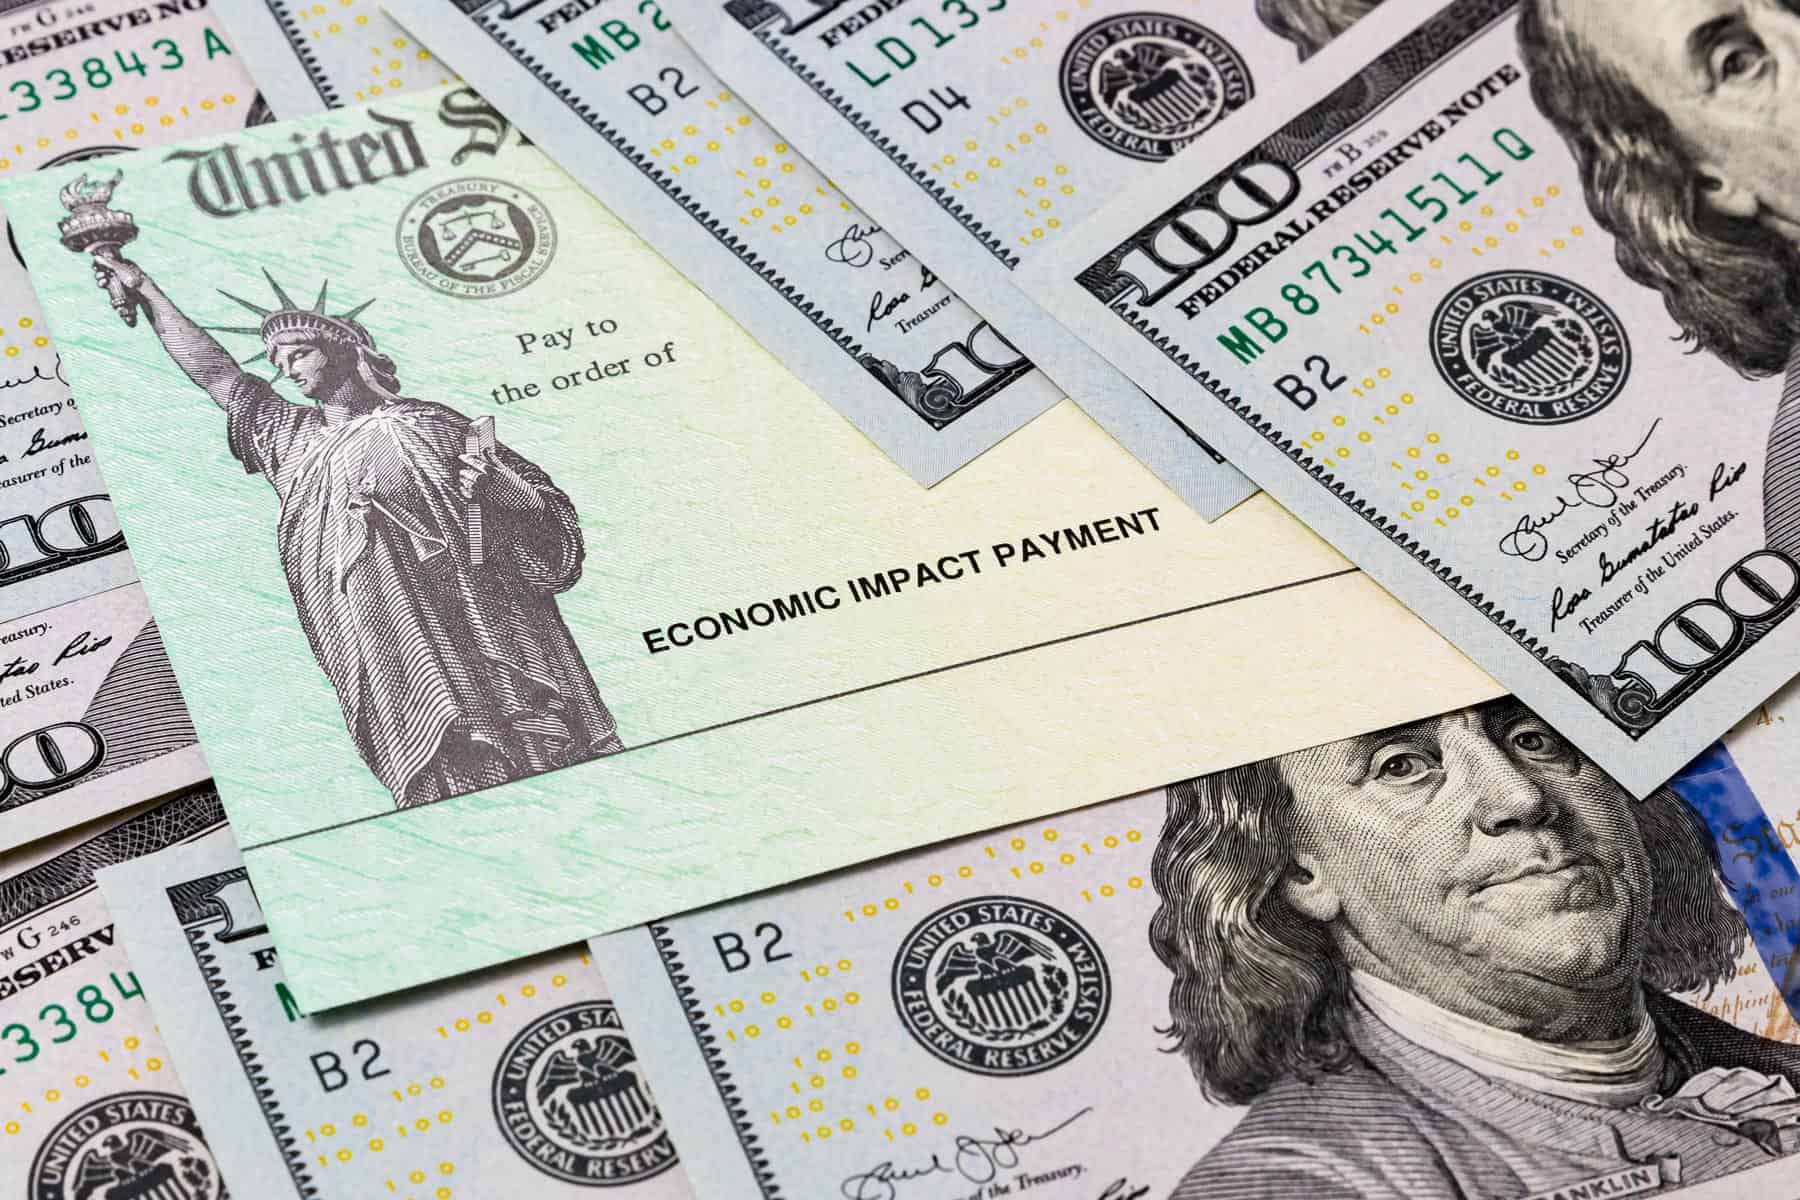 nuevo cheque de 1000 dolares entregaran a quienes cumplan los requisitos en estado de estados unidos